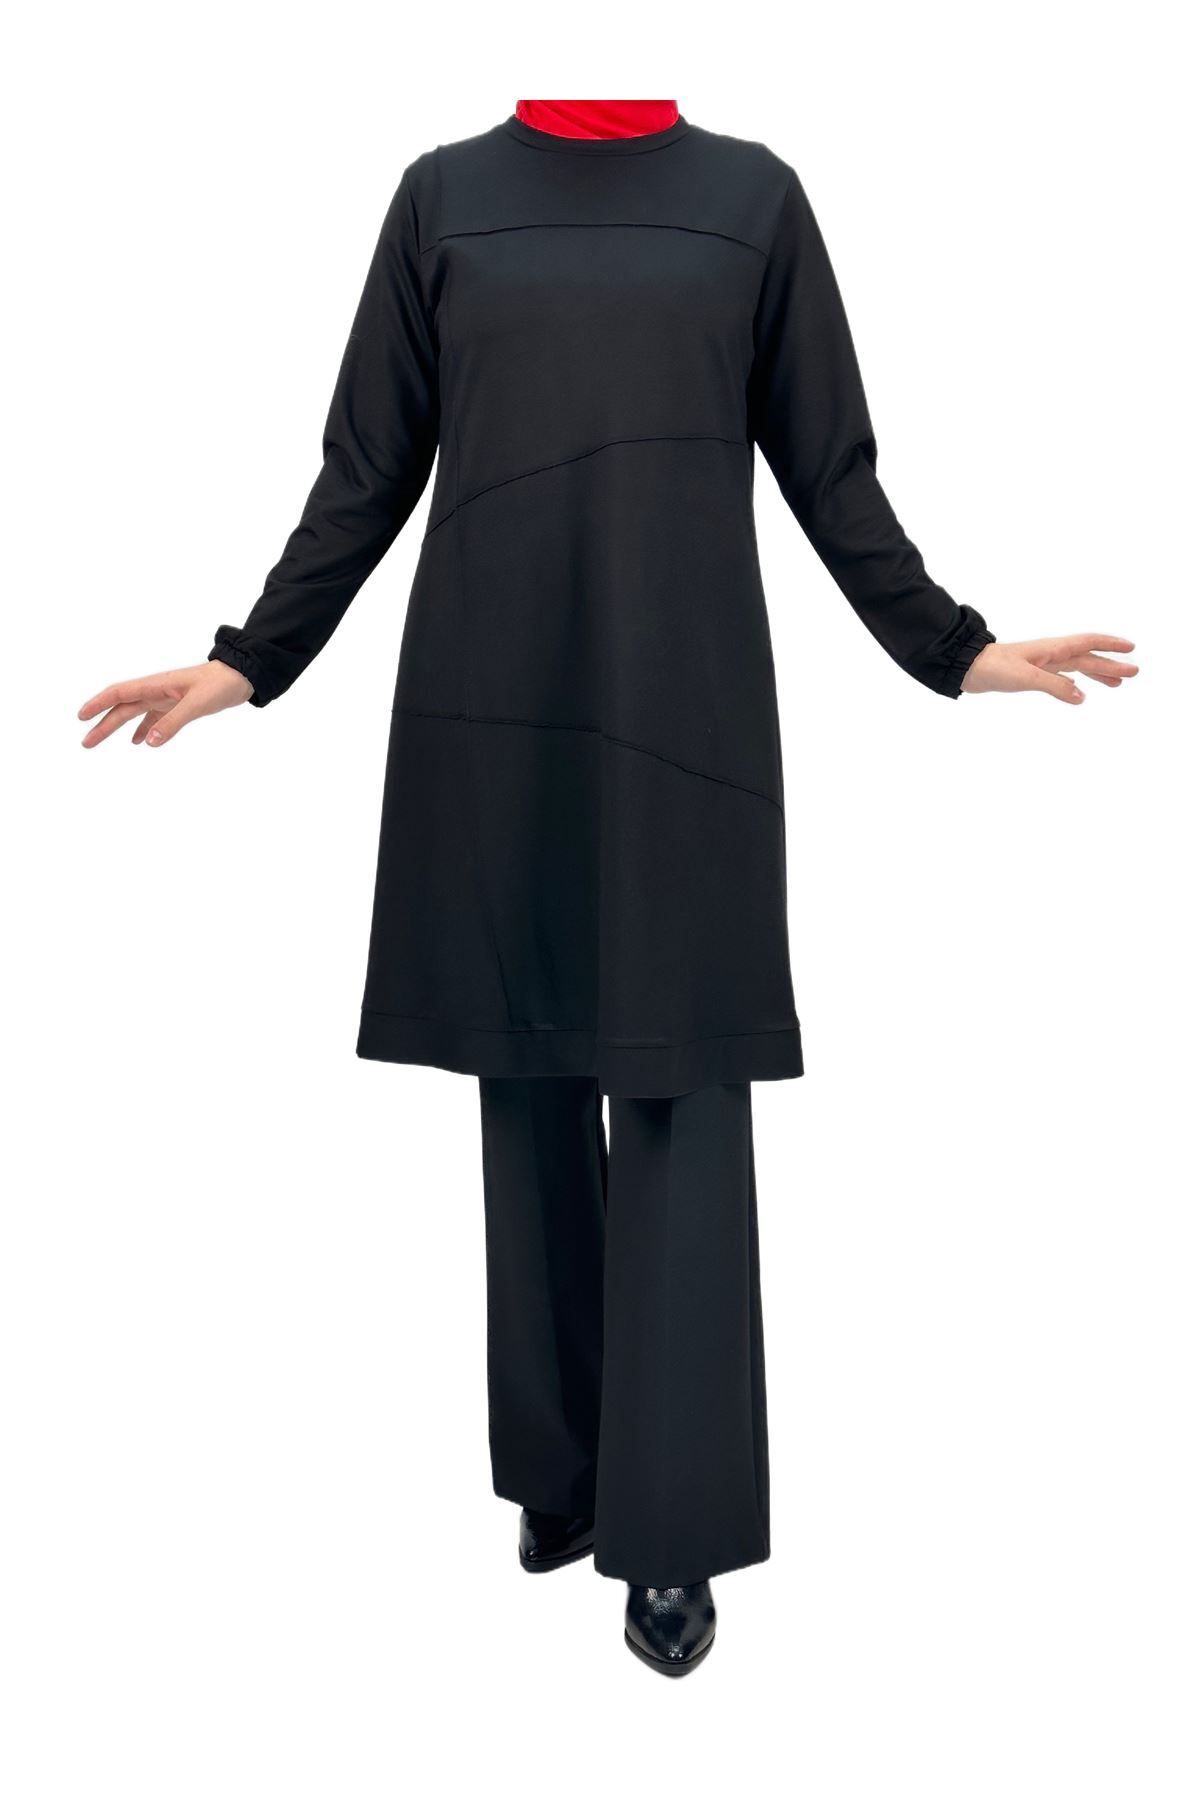 ottoman wear OTW617 İki İplik Nervürlü Tunik Siyah